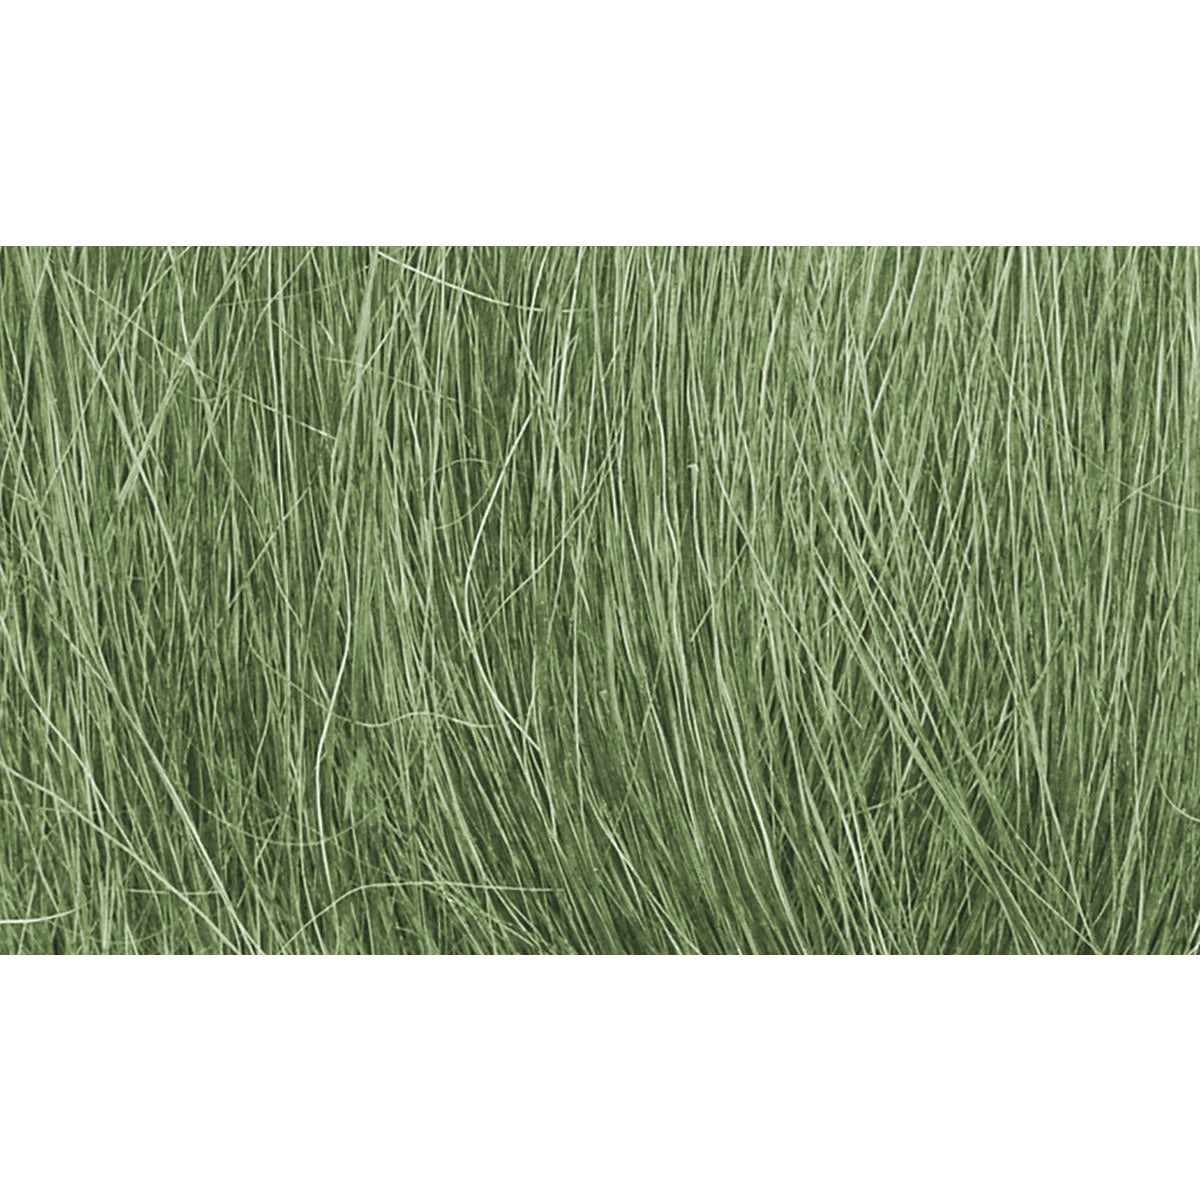 Woodland Scenics Field Grass - Medium Green WOO174